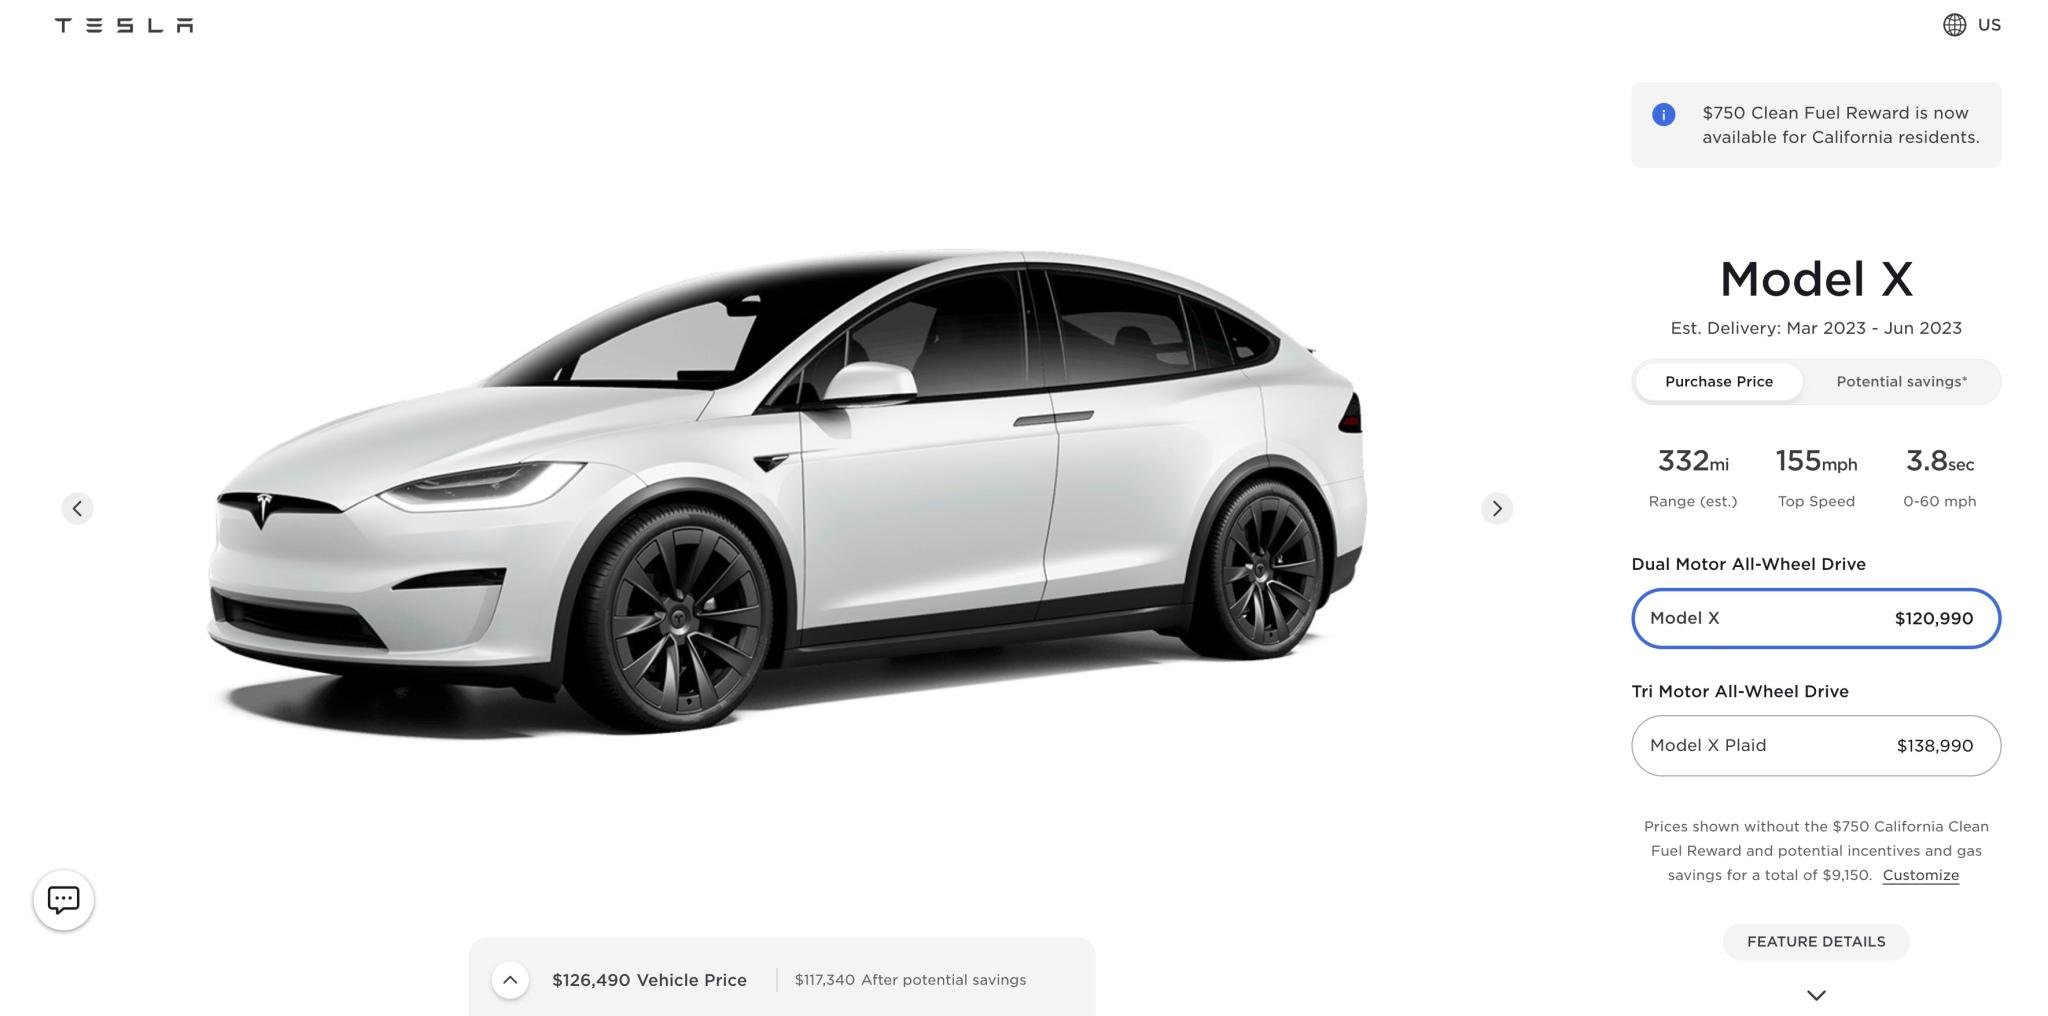 Model X recebeu um dos maiores reajustes de preço. (Fonte: Tesla via Electrek / Reprodução)